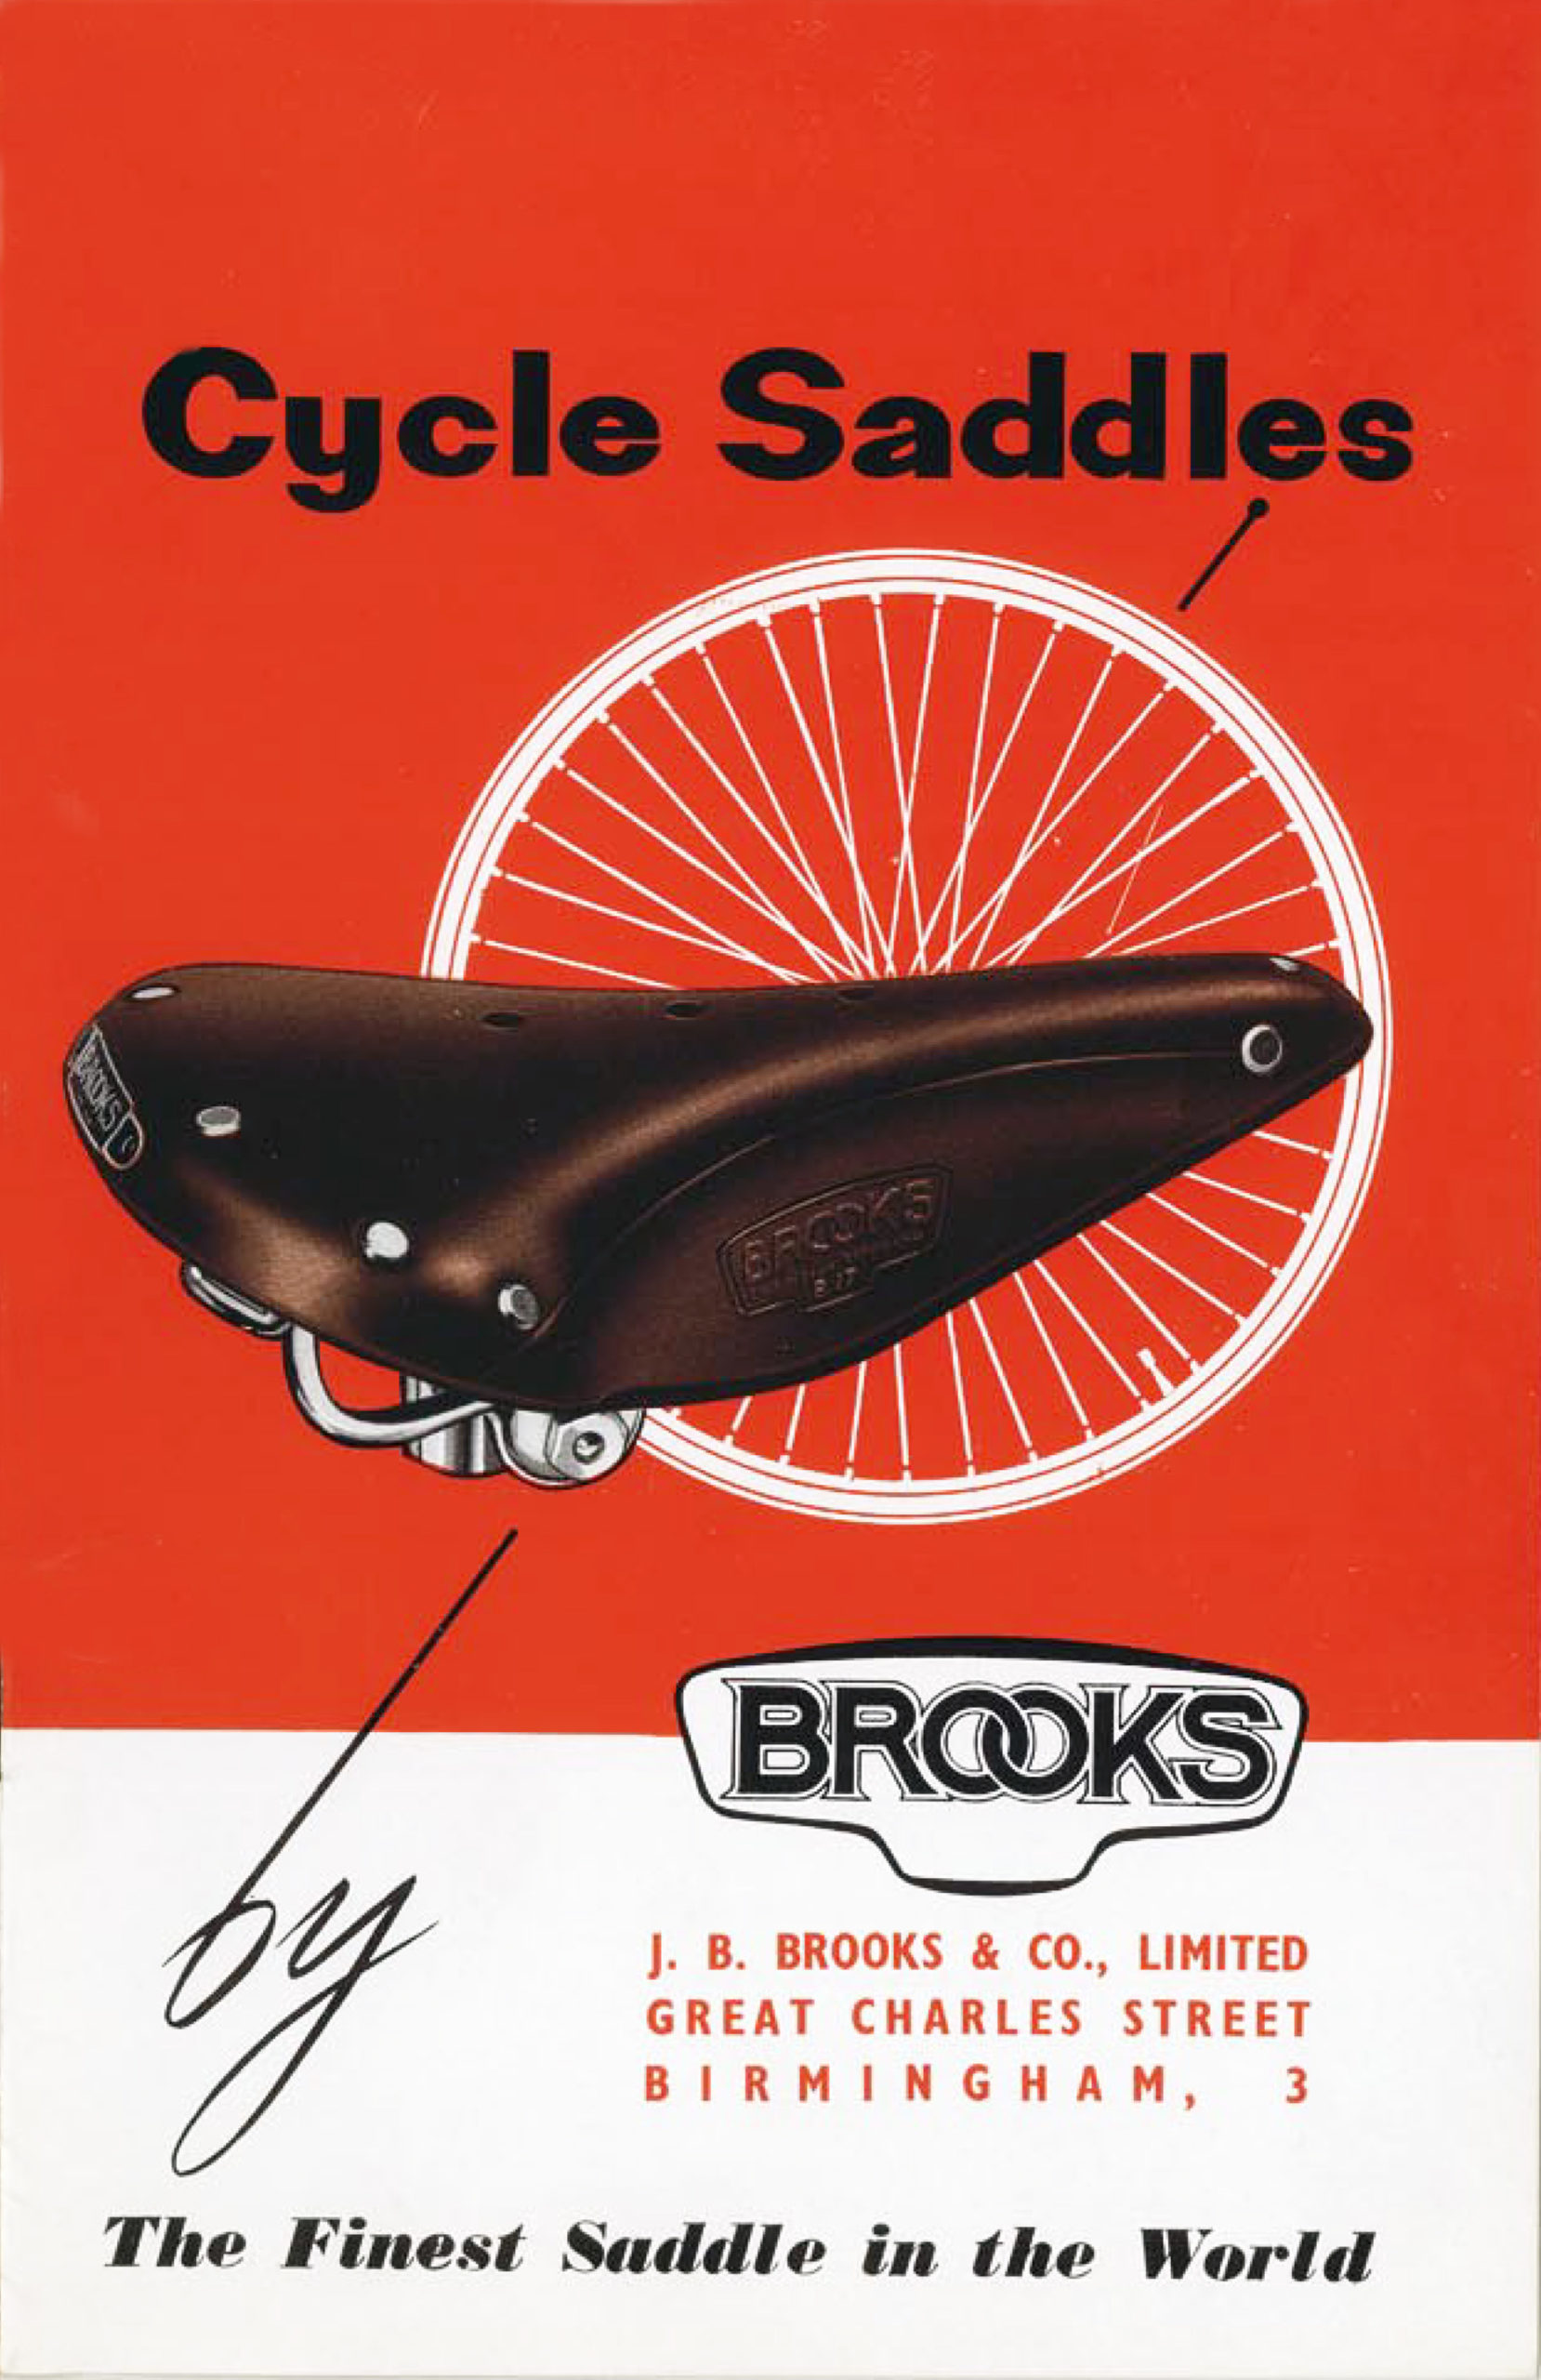 ebykr-brooks-1957-catalog-cover